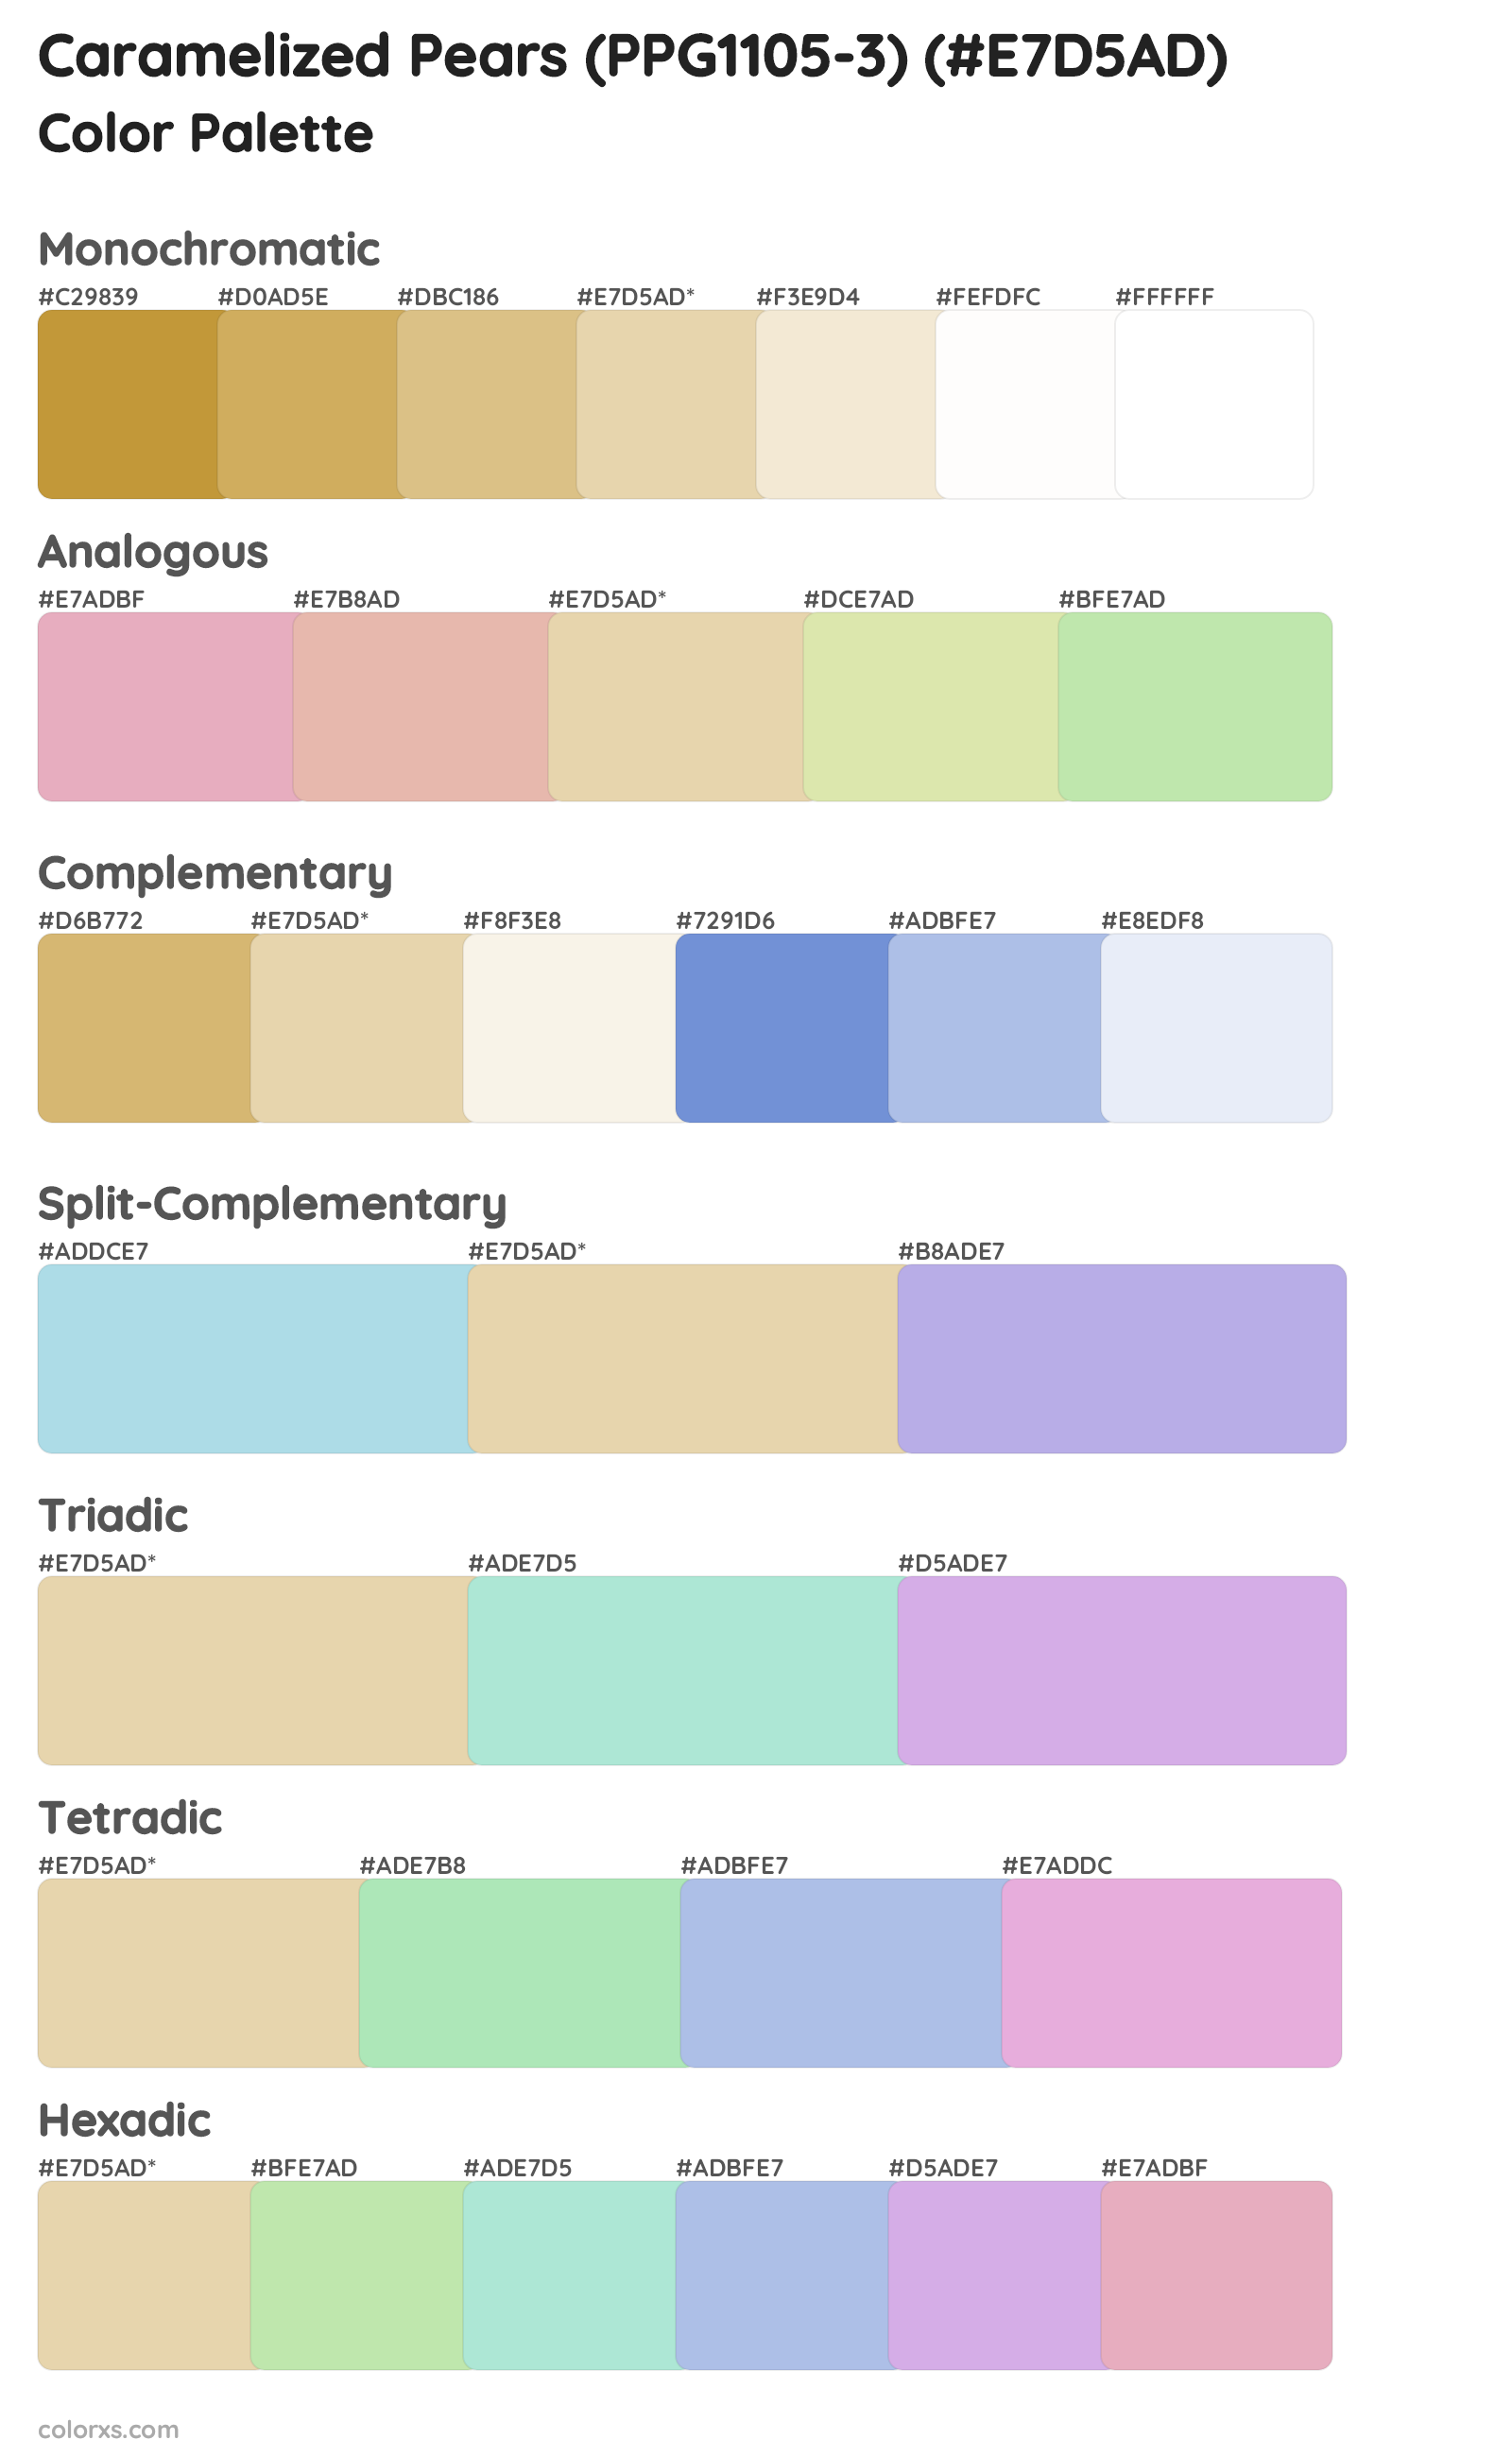 Caramelized Pears (PPG1105-3) Color Scheme Palettes